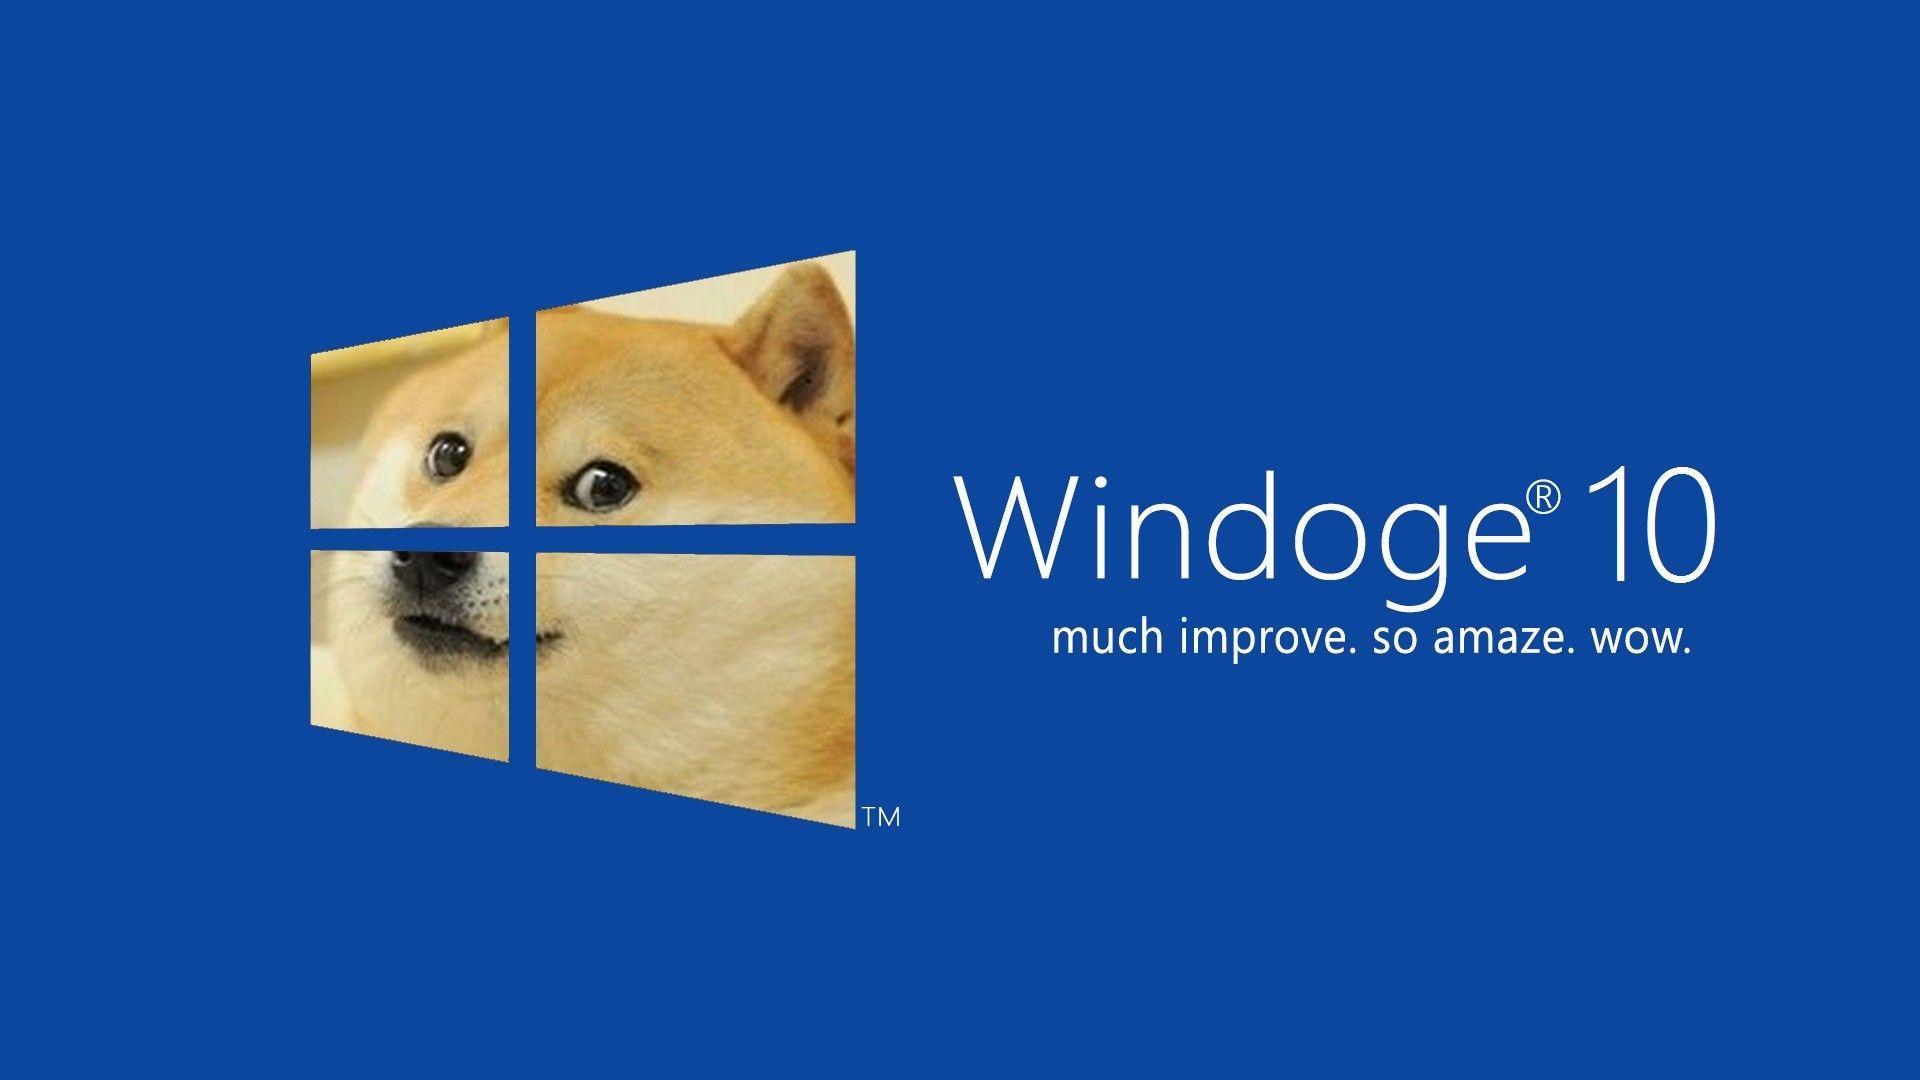 Hình nền nghịch ngợm Windows 7: Xem ngay hình nền nghịch ngợm cho Windows 7 để đem lại sự mới mẻ và thú vị cho trang trí desktop của bạn. Với những hình ảnh vô cùng độc đáo và hài hước, chắc chắn bạn sẽ không muốn bỏ qua.